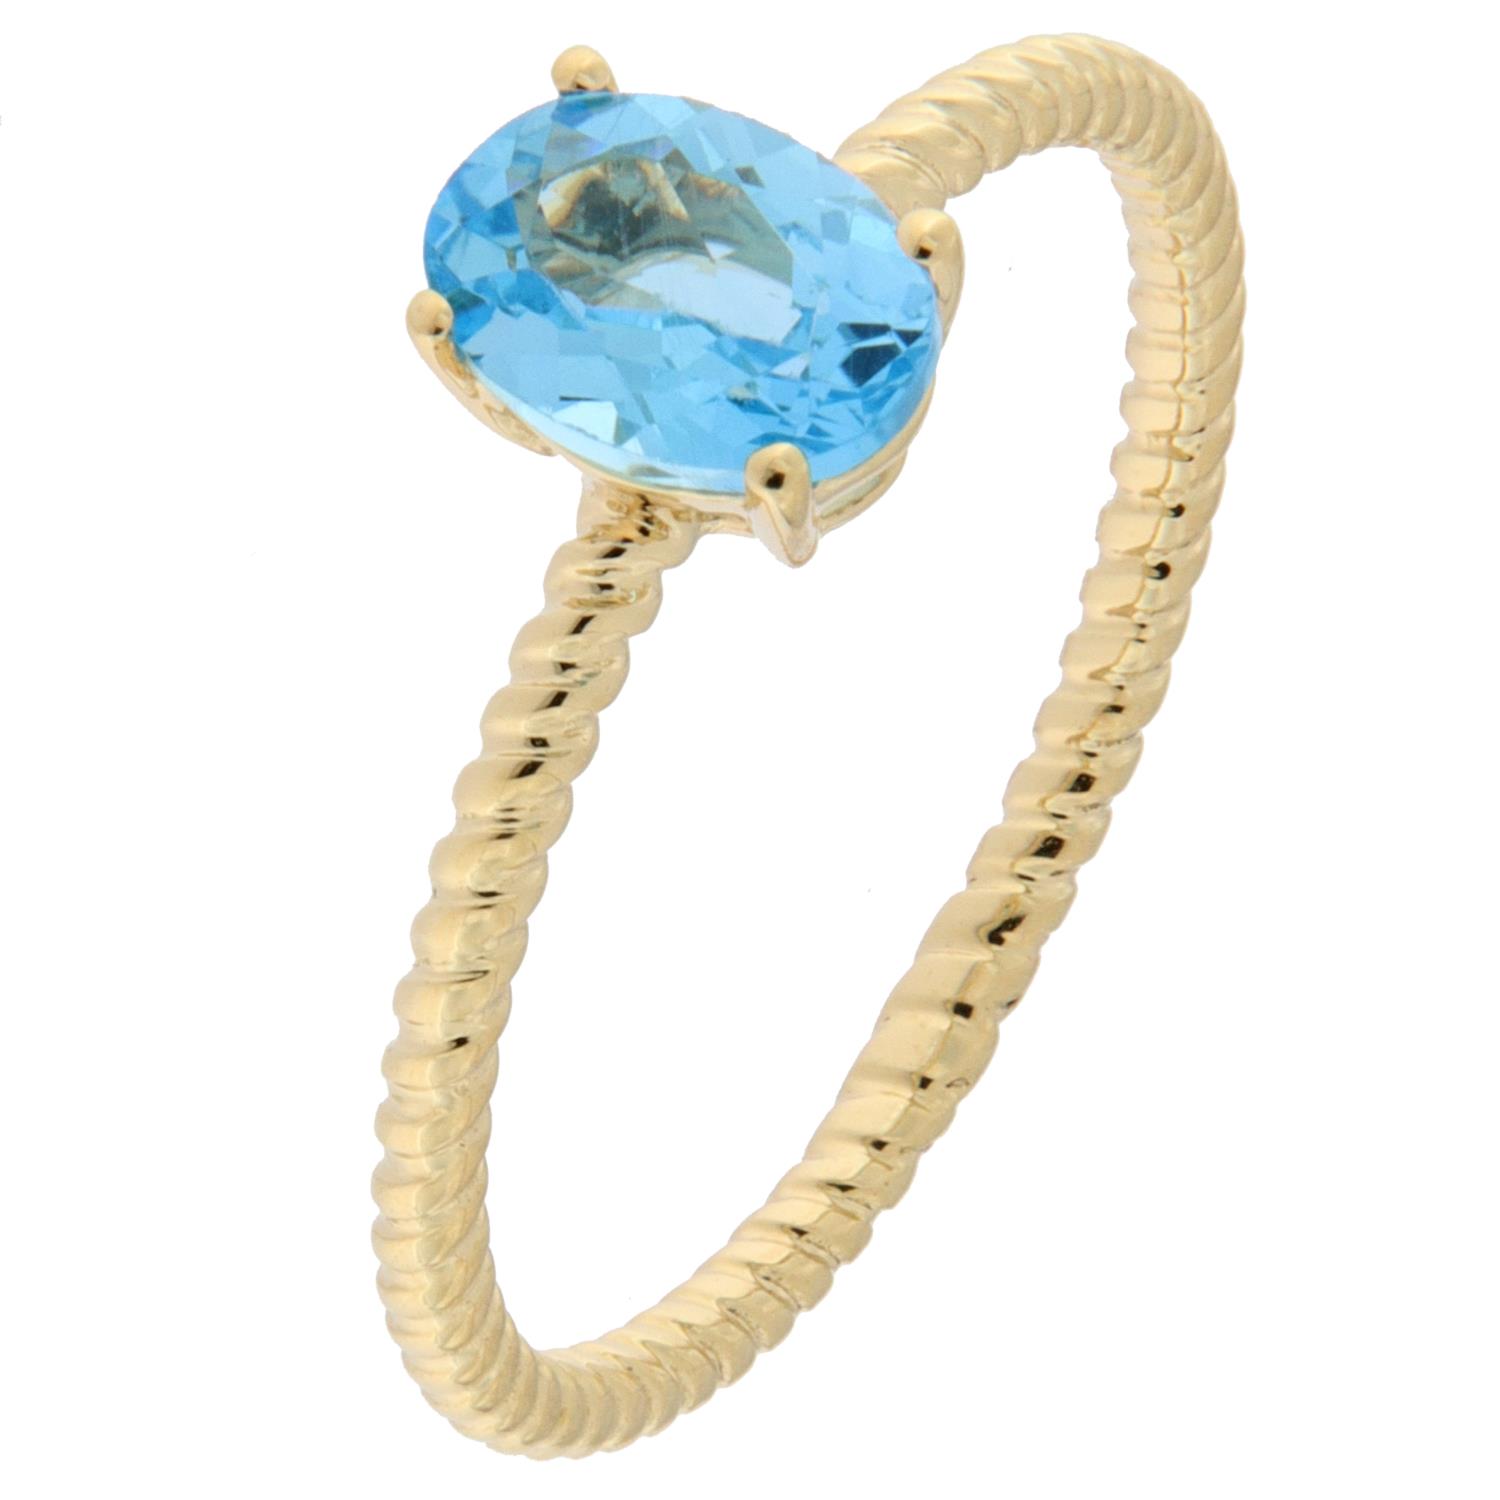 Ring gull 0,90ct blå topaz, oval i 4 klør m/tvinnet ringskinne (Veil. 5990,-)